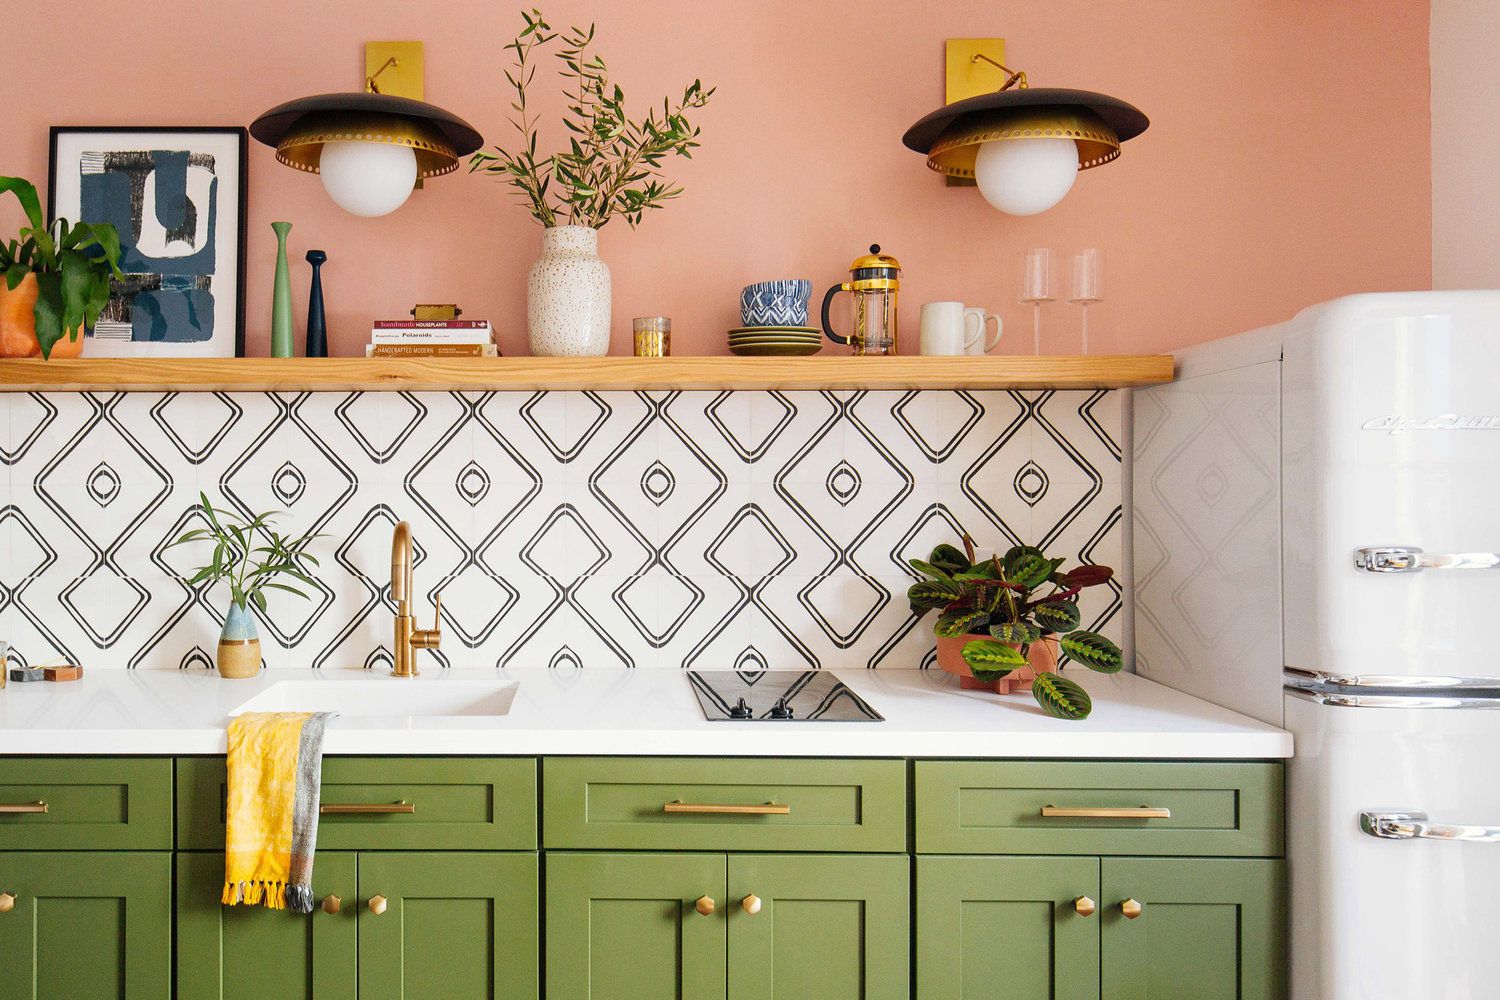 Khu vực nấu nướng với bức tường sơn màu hồng kết hợp màu xanh ô liu của tủ bếp như được phân chia bởi backsplash trắng mang họa tiết hình học cho cái nhìn thoáng đãng và không kém phần hiện đại.